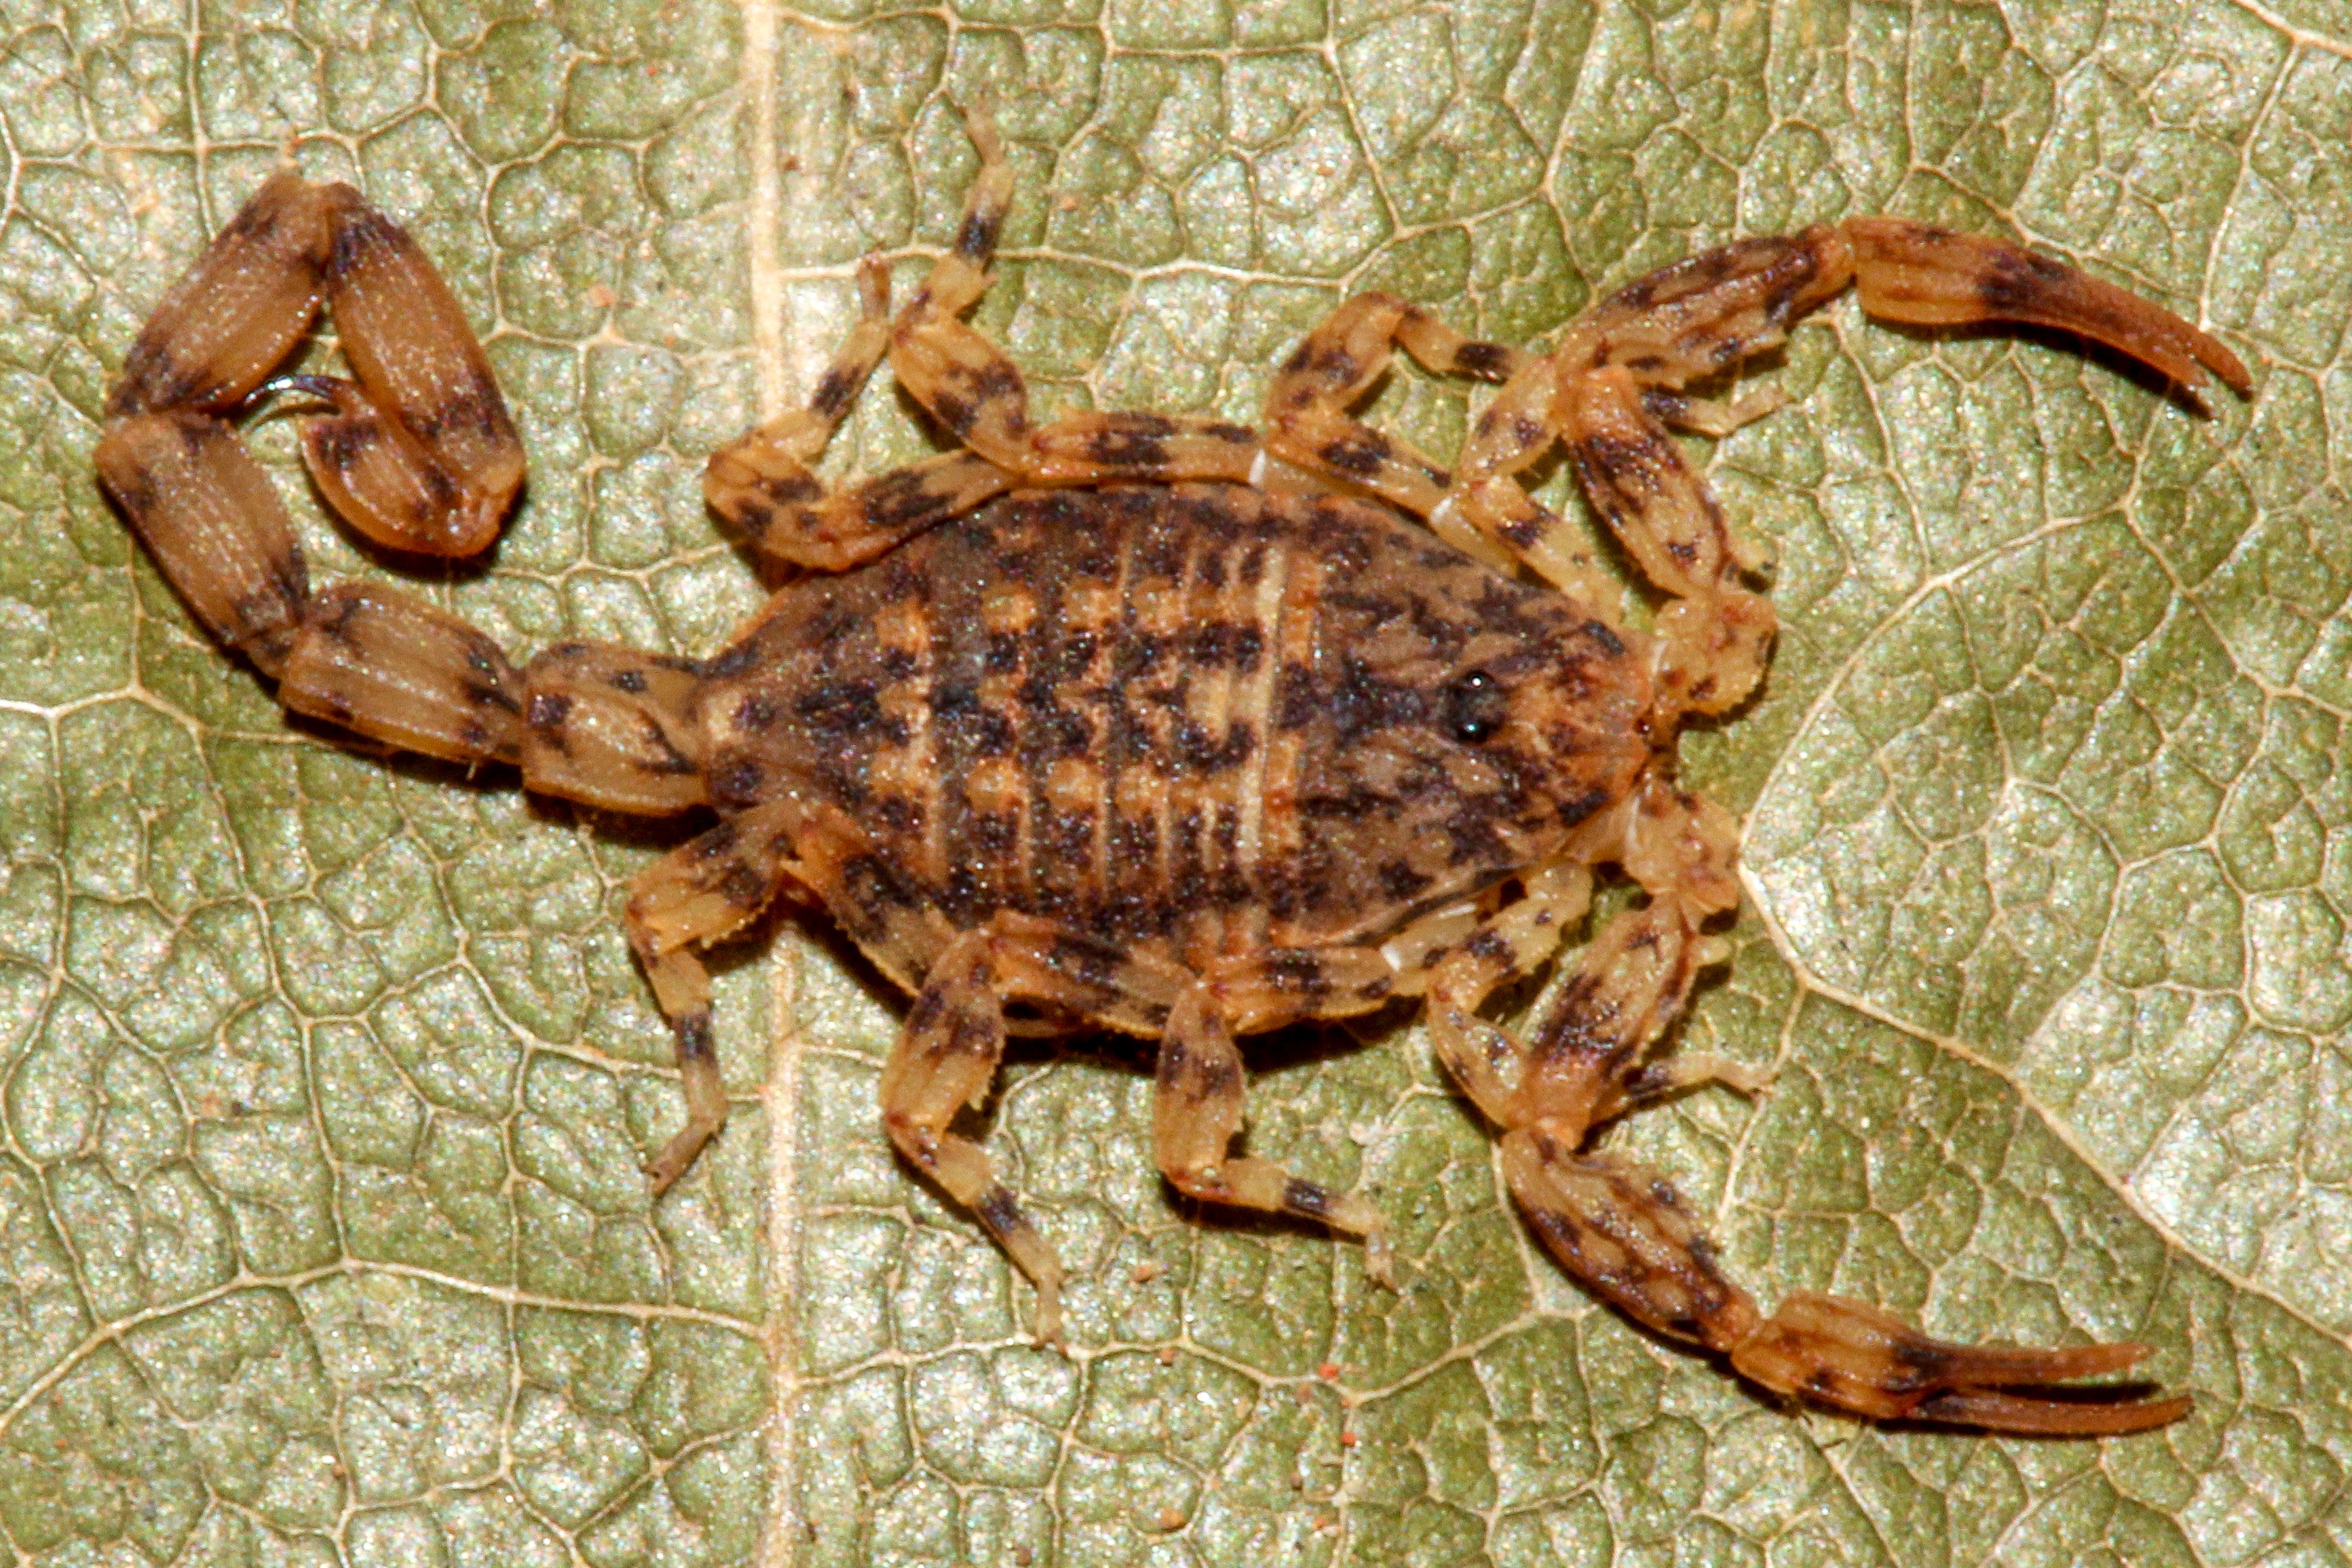 Com menos de 2 cm, novo escorpião amazônico é descoberto em Roraima; espécie é uma das menores do Brasil